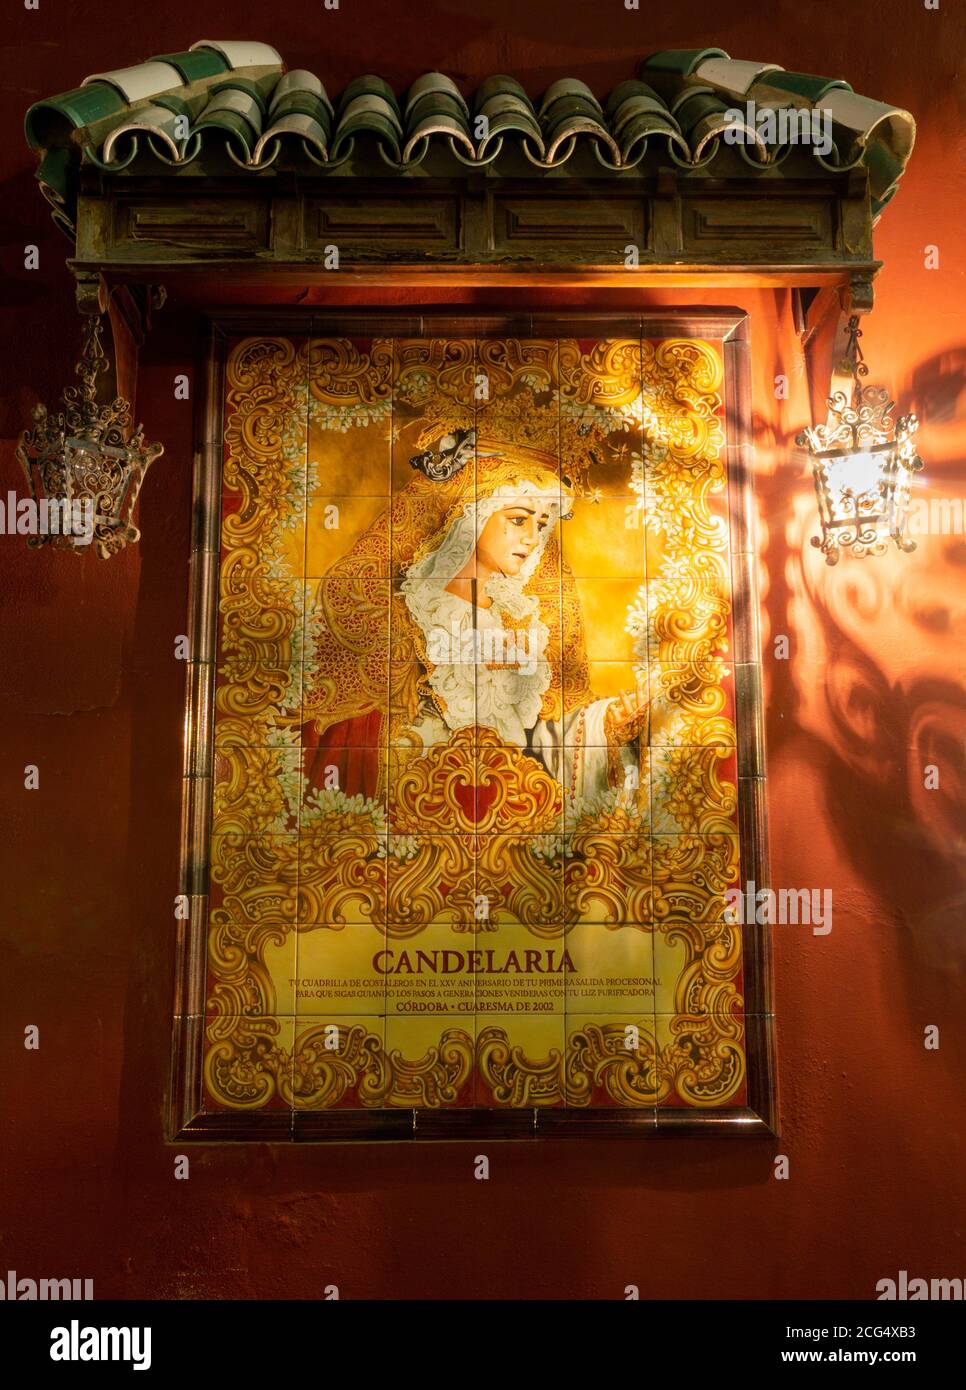 CORDOBA, SPANIEN - 26. MAI 2015: Die keramisch gekachelte Madonna auf dem Platz Compas de San Francisco von C. J. Soriano (2007). Stockfoto